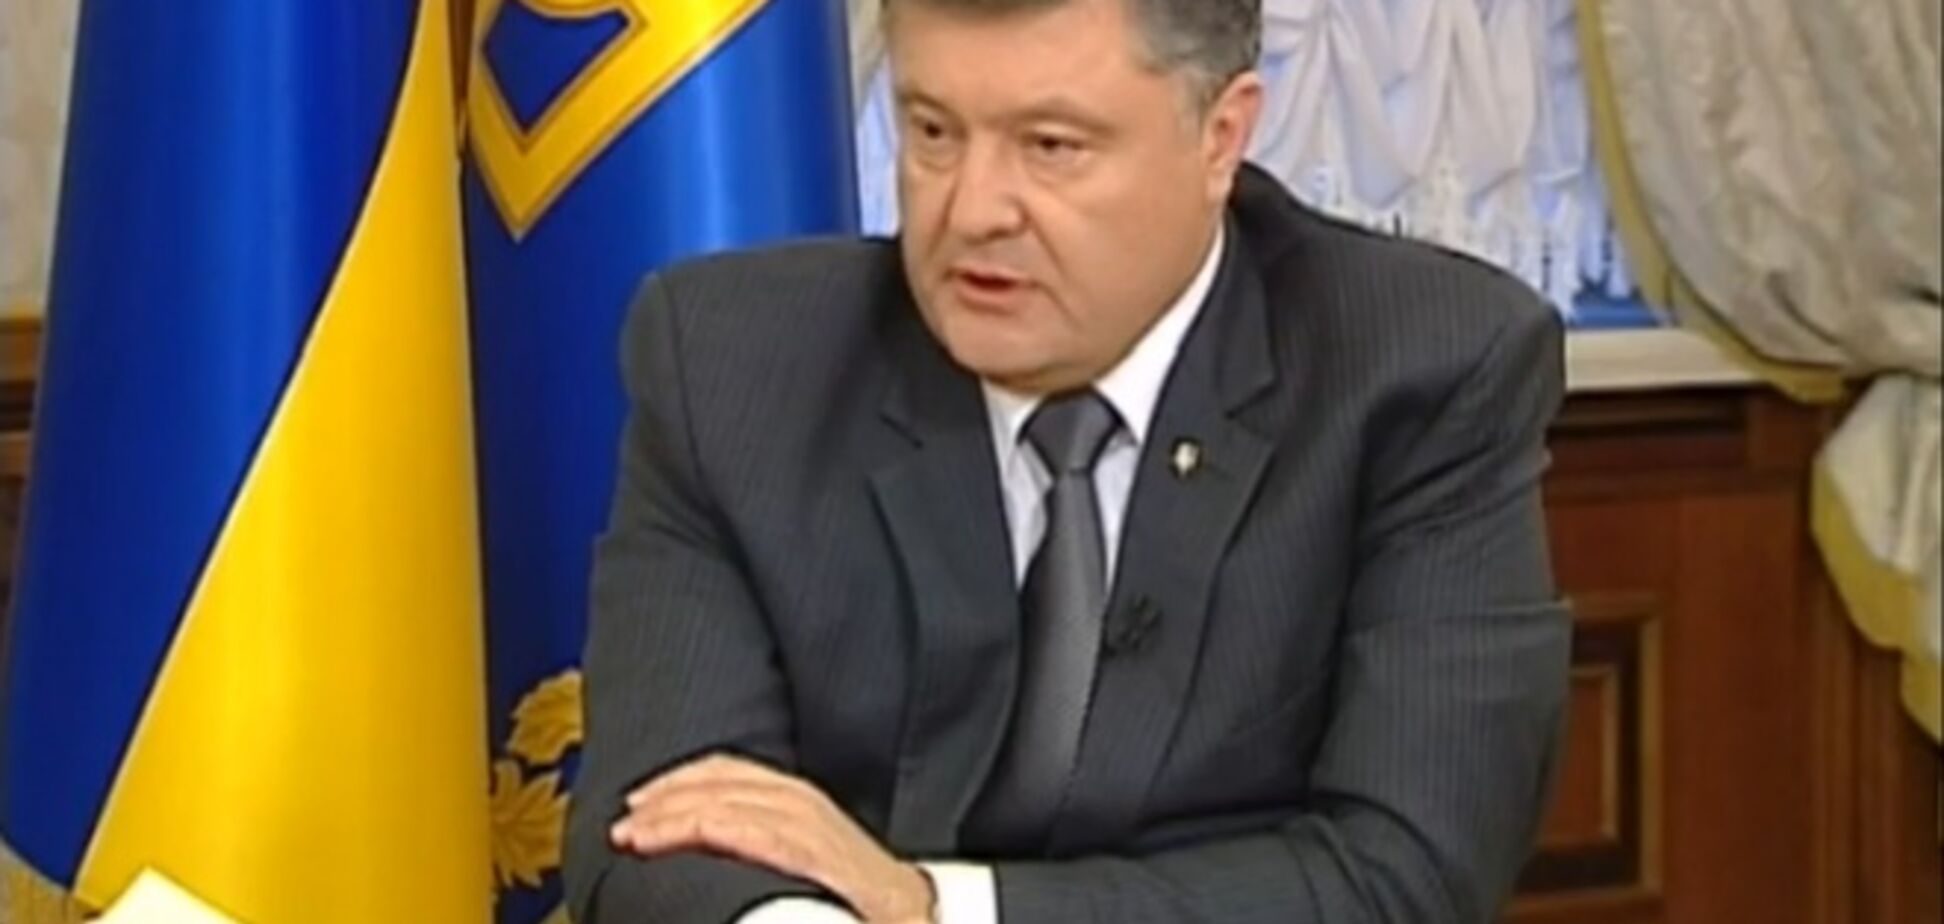 Линию разграничения на Донбассе должна утвердить Рада - Порошенко